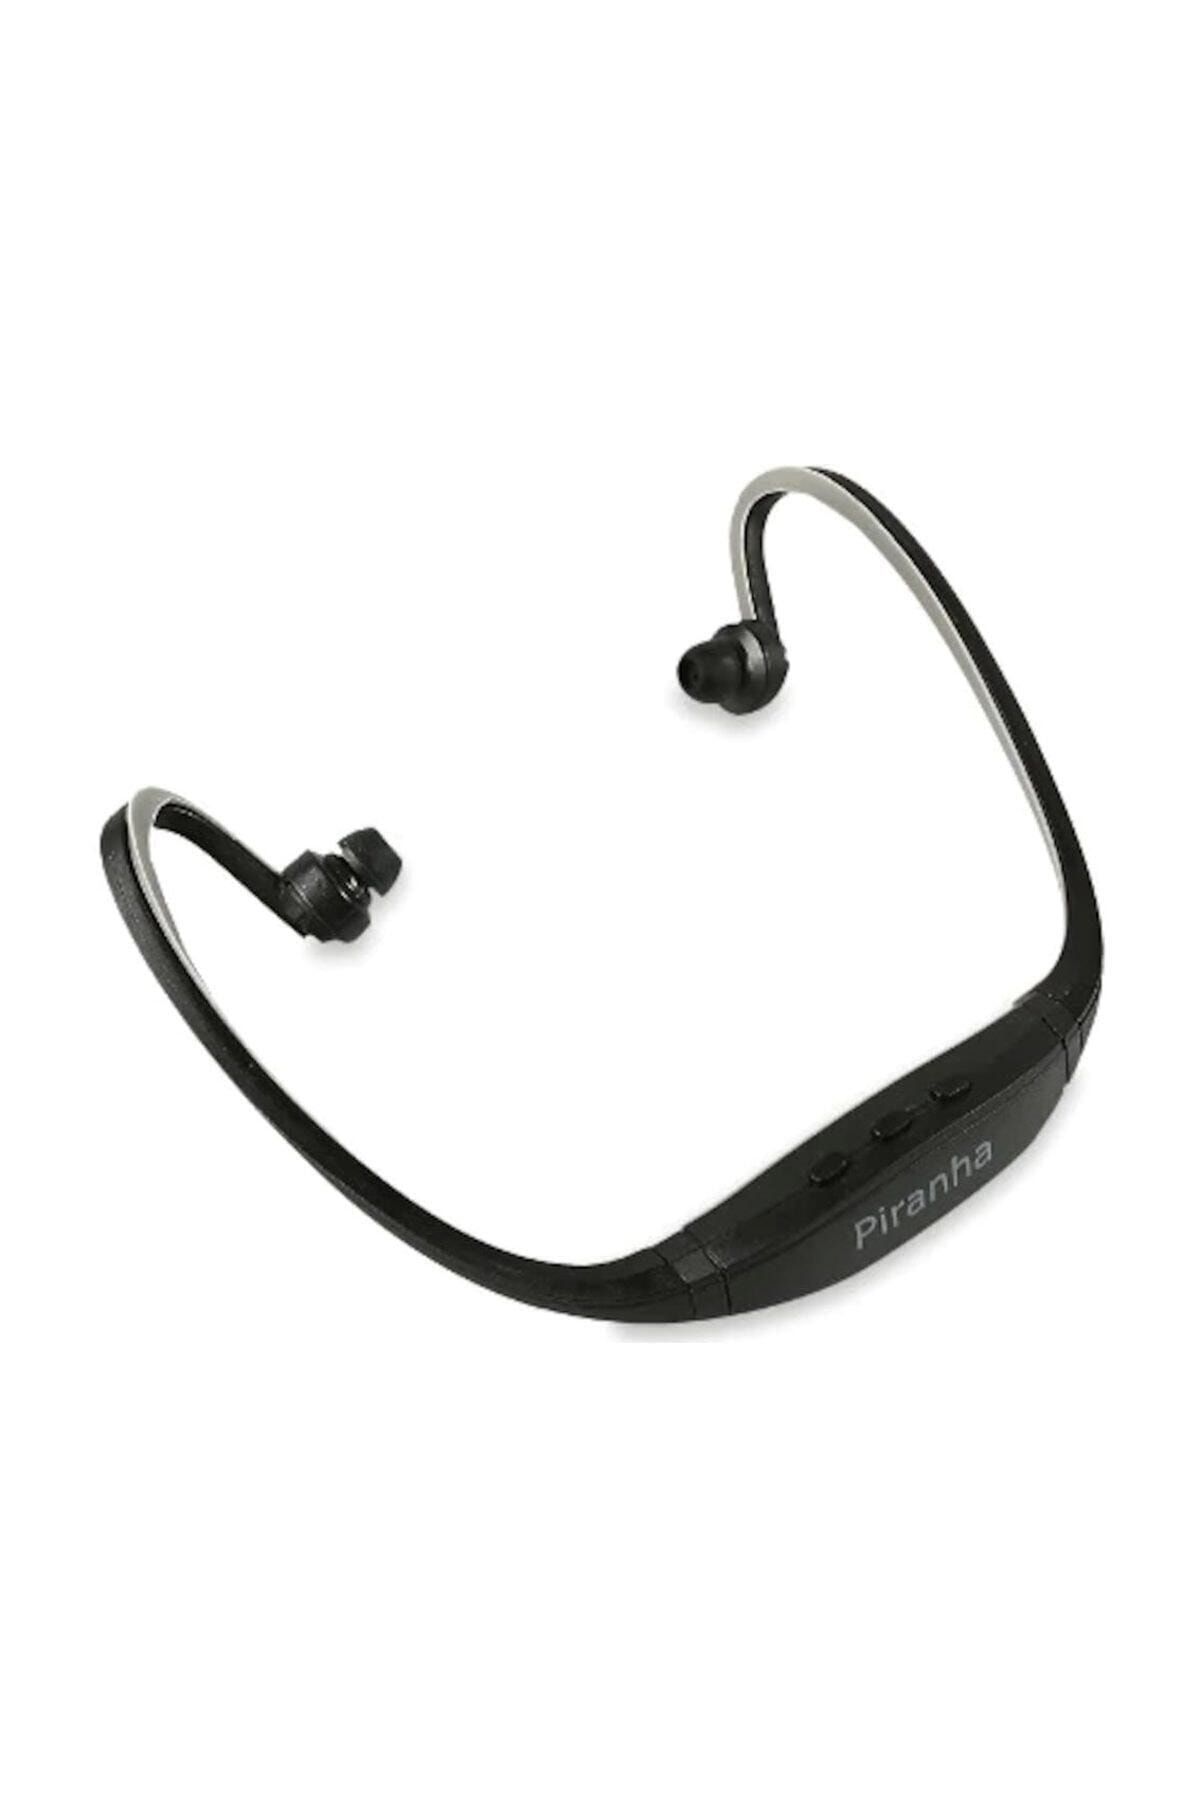 Piranha 2279 Bluetooth ( Kablosuz) Sporcu Kulaklık